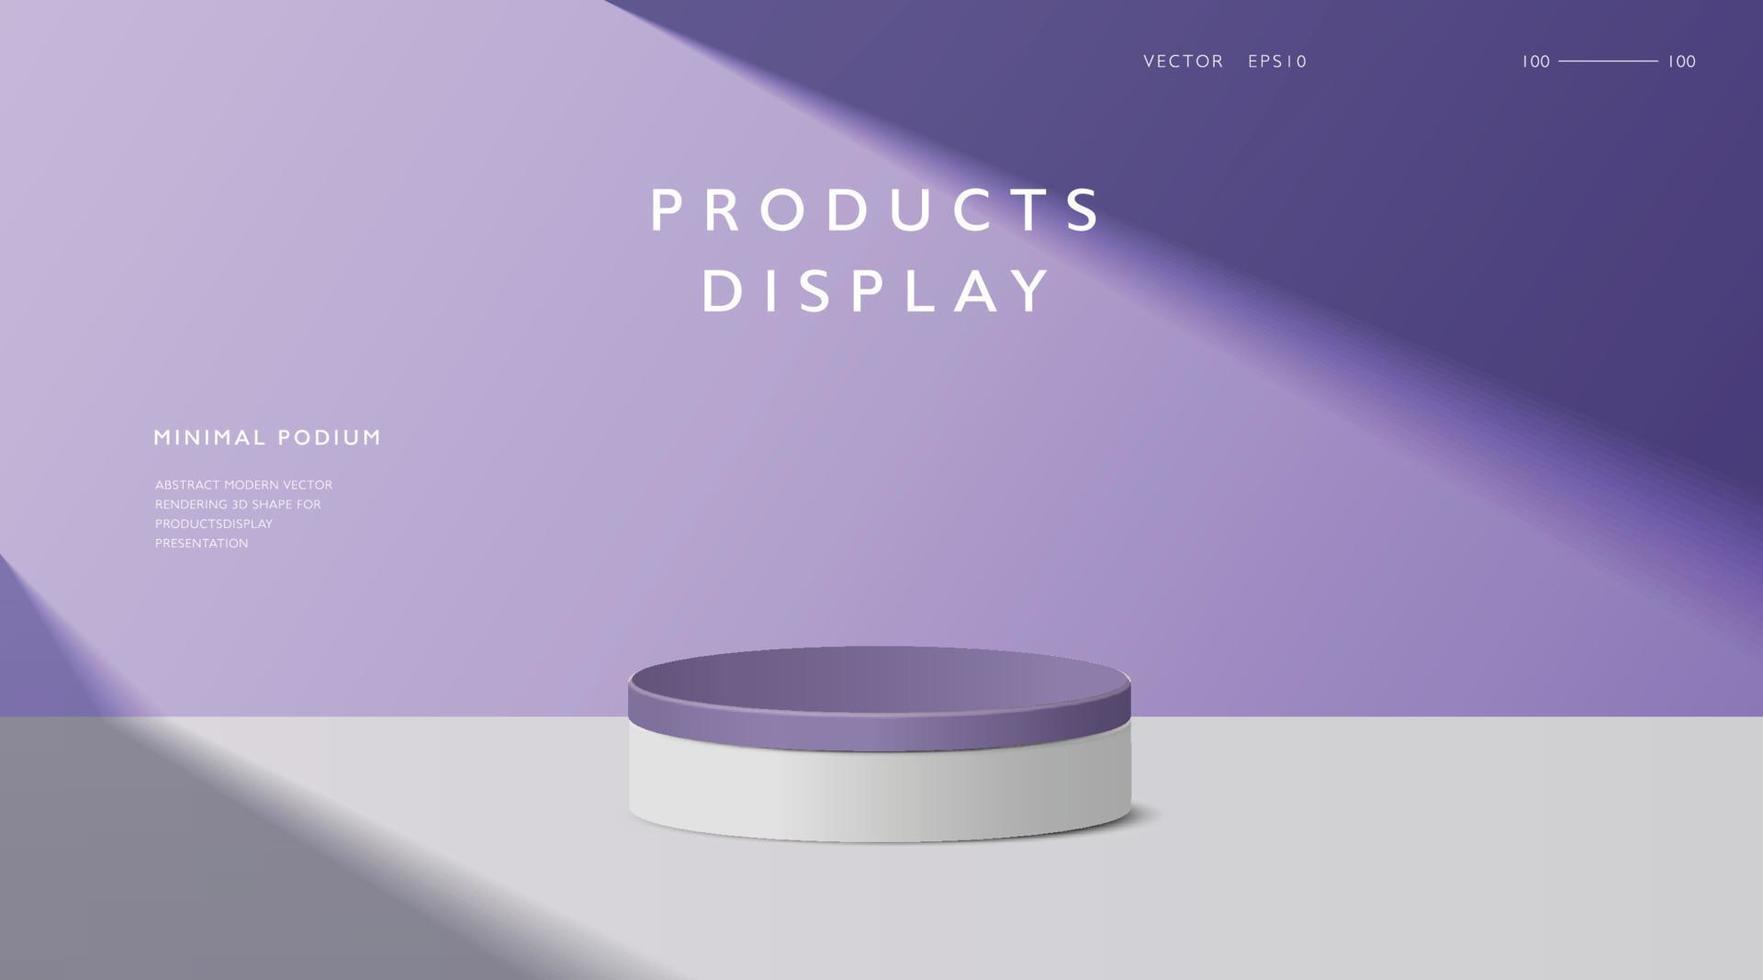 scène minimale abstraite, podium cylindrique sur fond violet pour les présentations de produits. vecteur